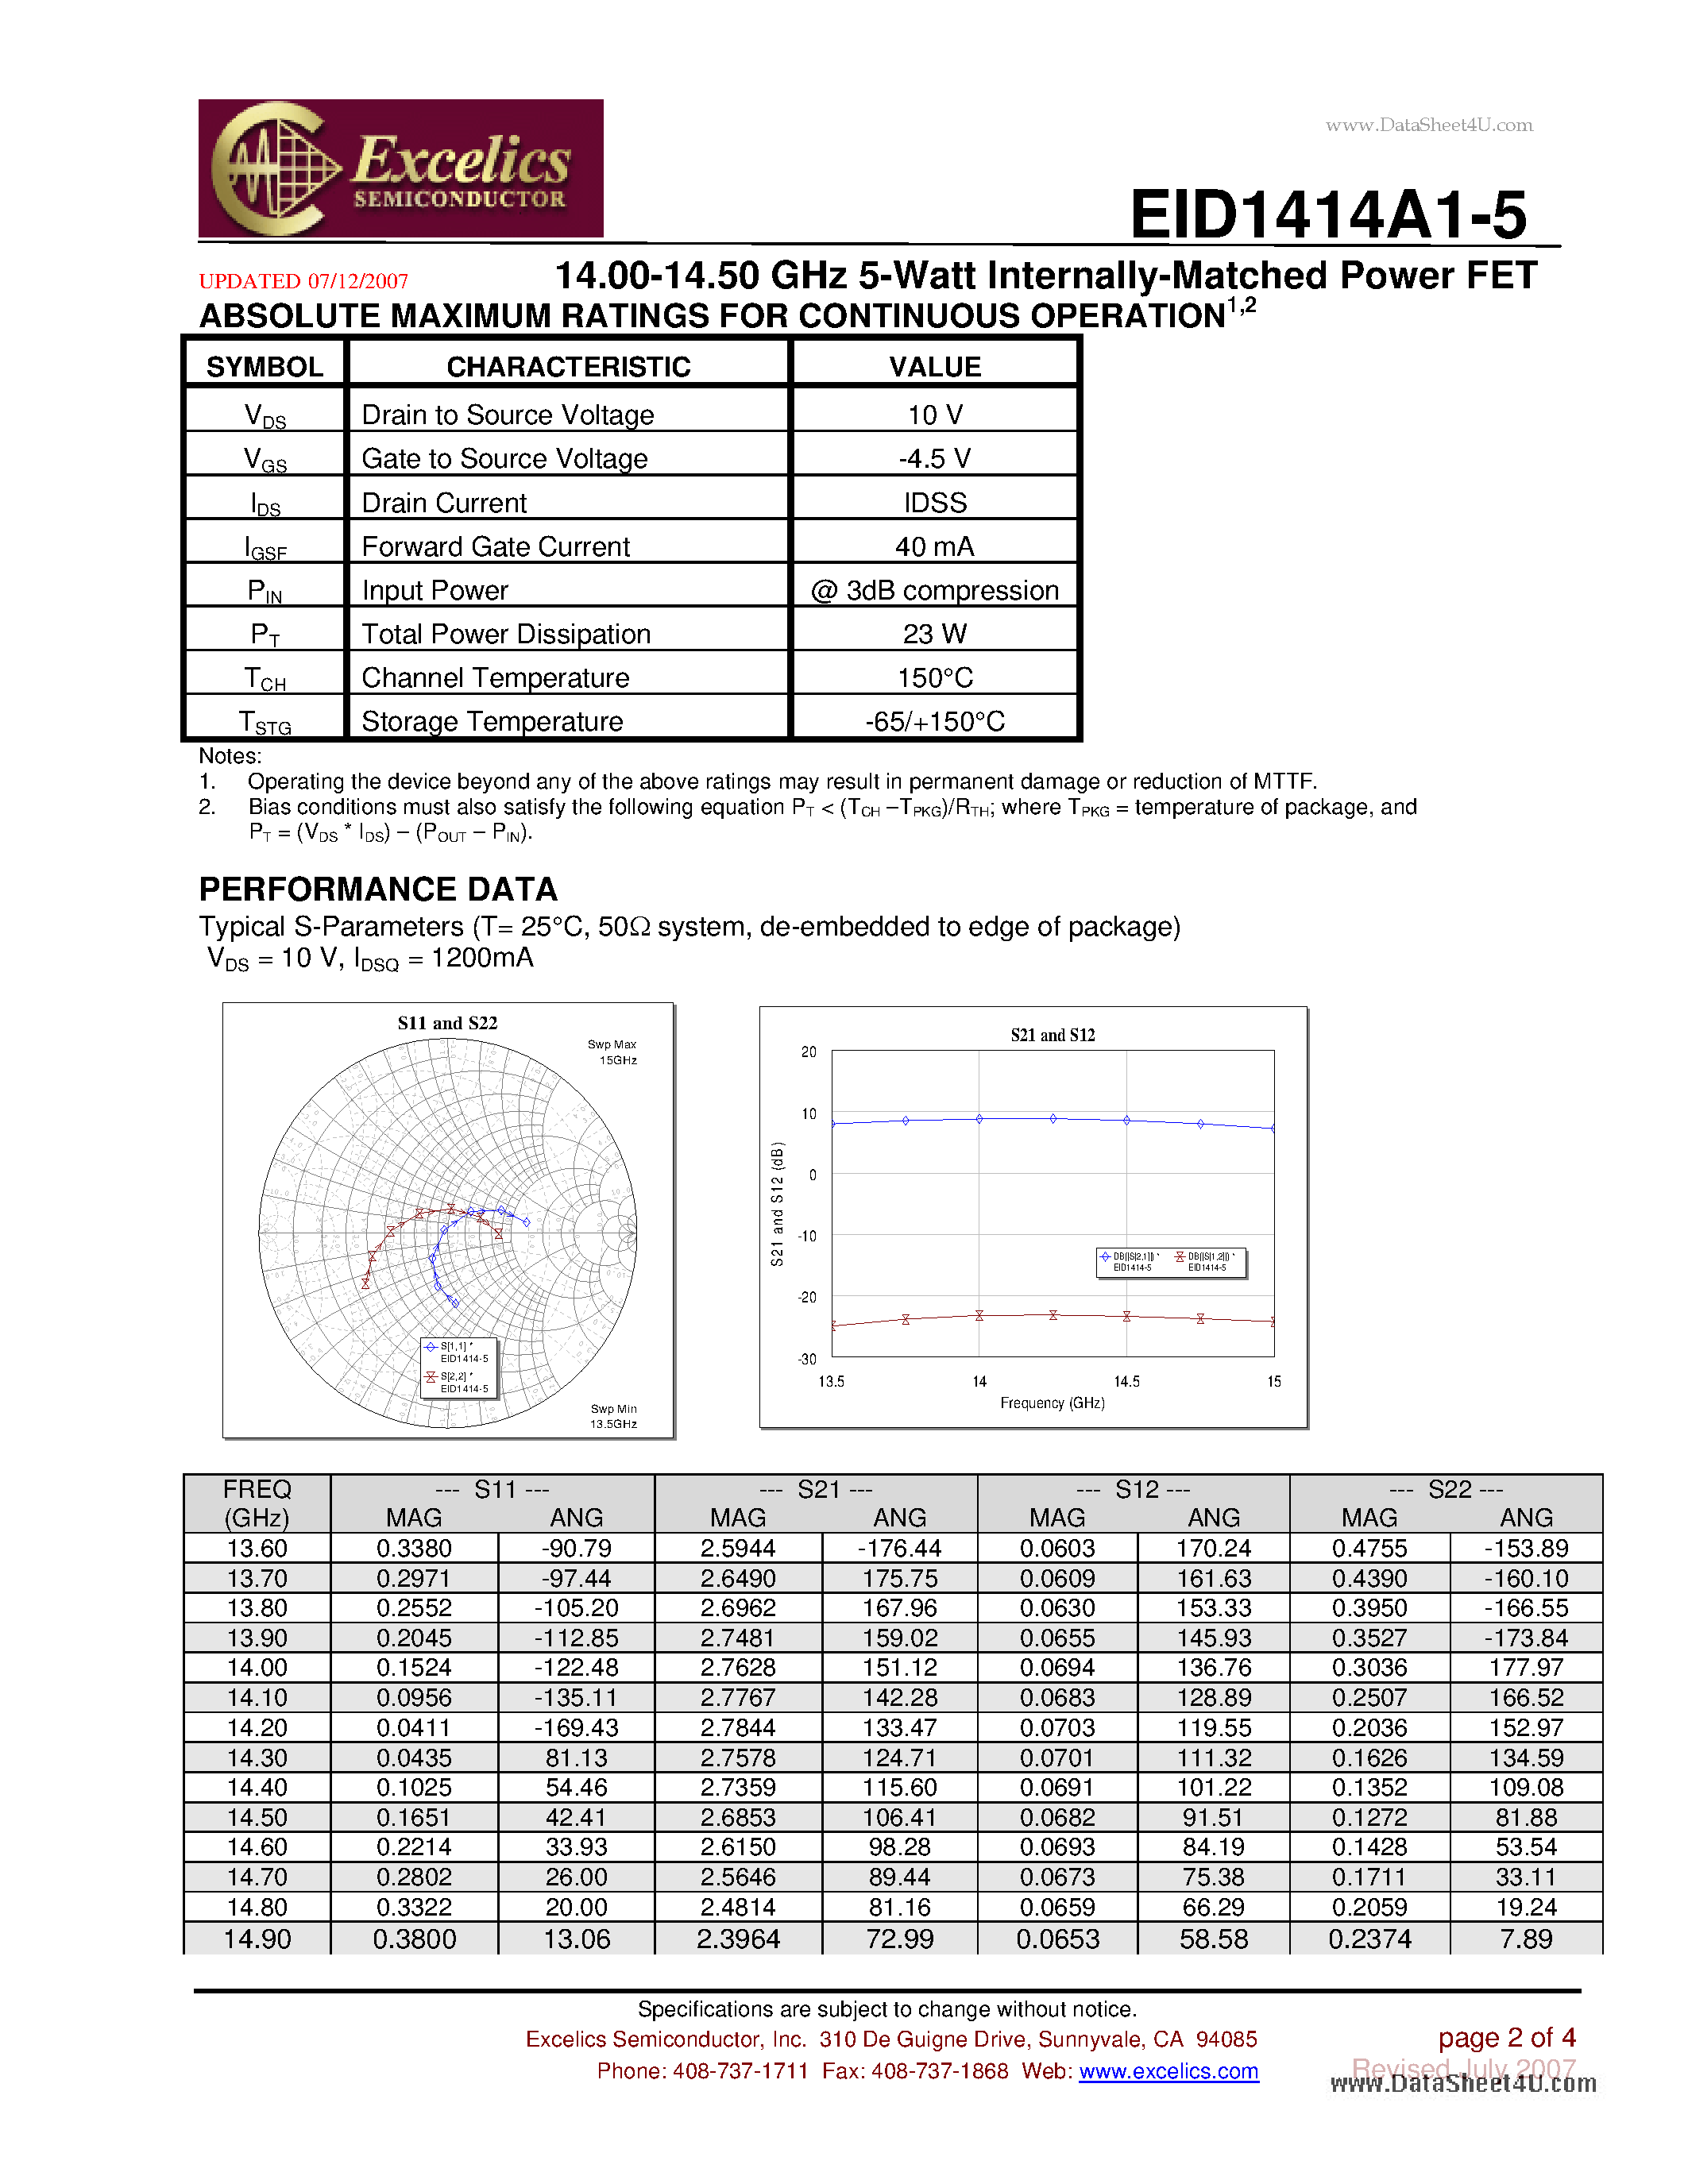 Datasheet EID1414A1-5 - 14.00-14.50 GHz 5-Watt Internally-Matched Power FET page 2